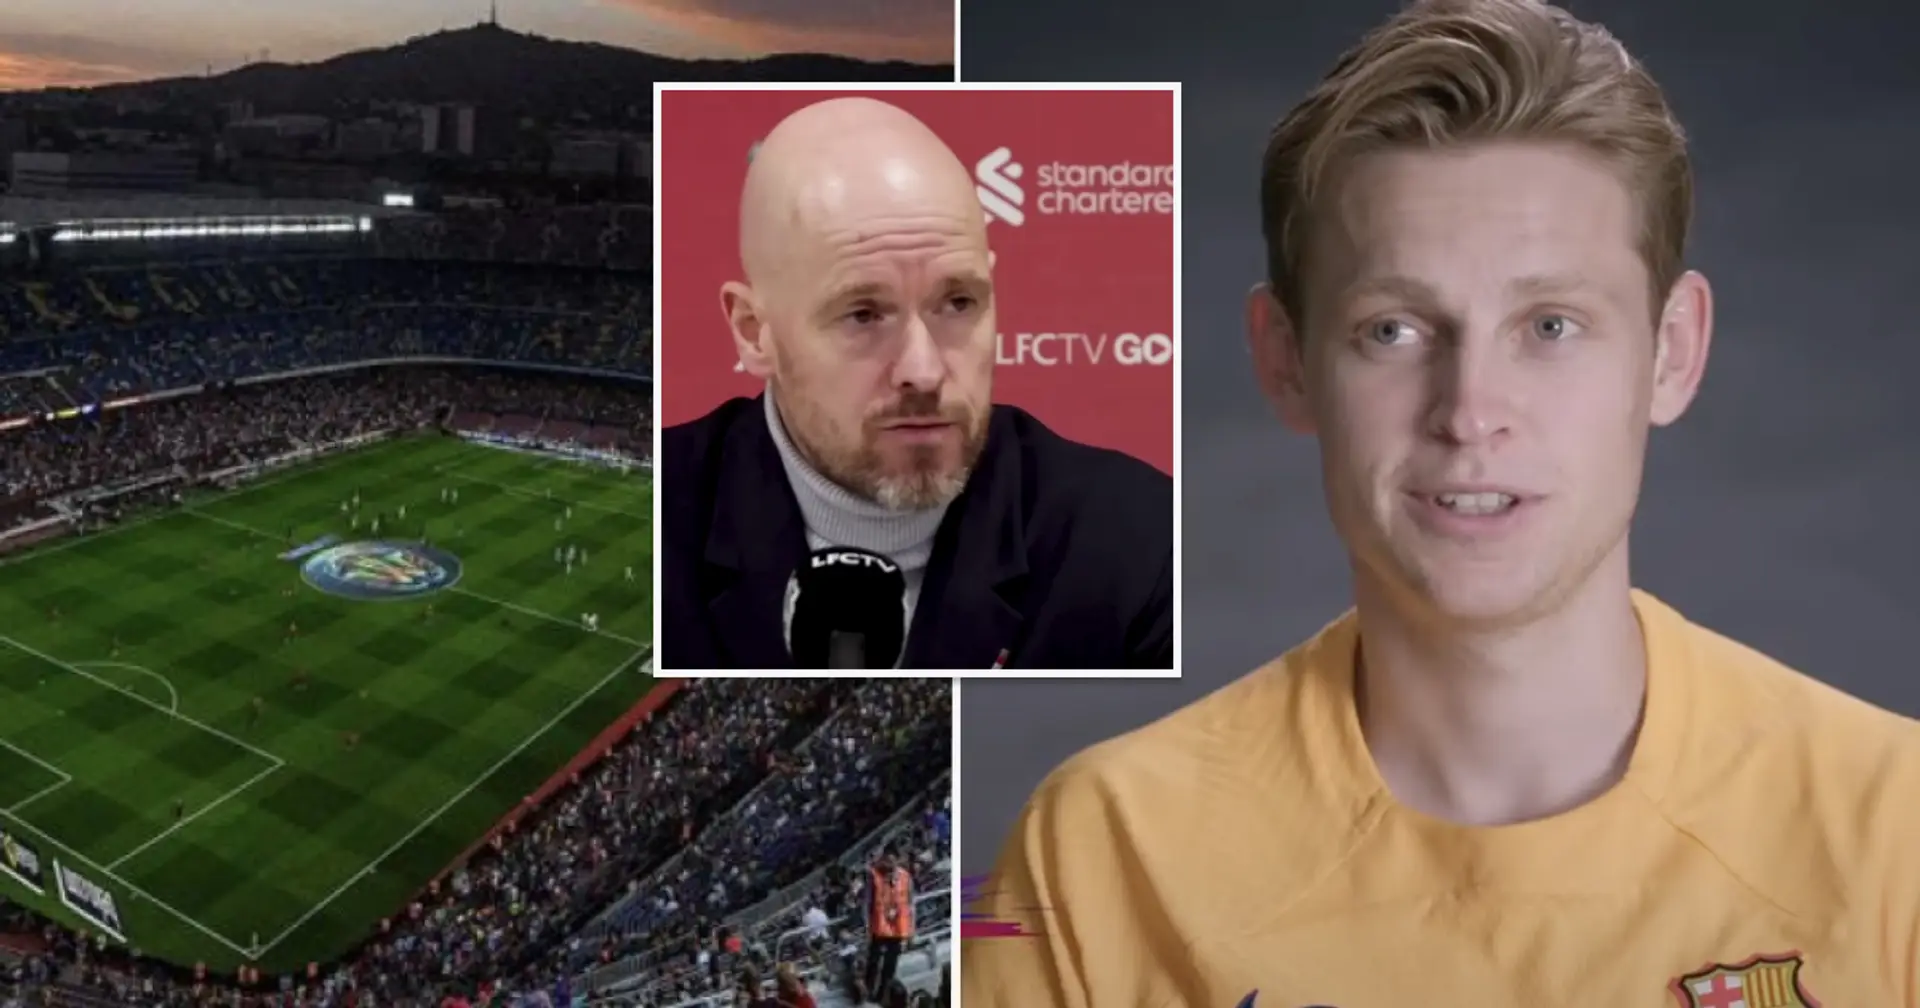 "L'équipe de mes rêves": Frenkie de Jong clarifie les intentions de Barcelone au milieu de l'intérêt de Man United